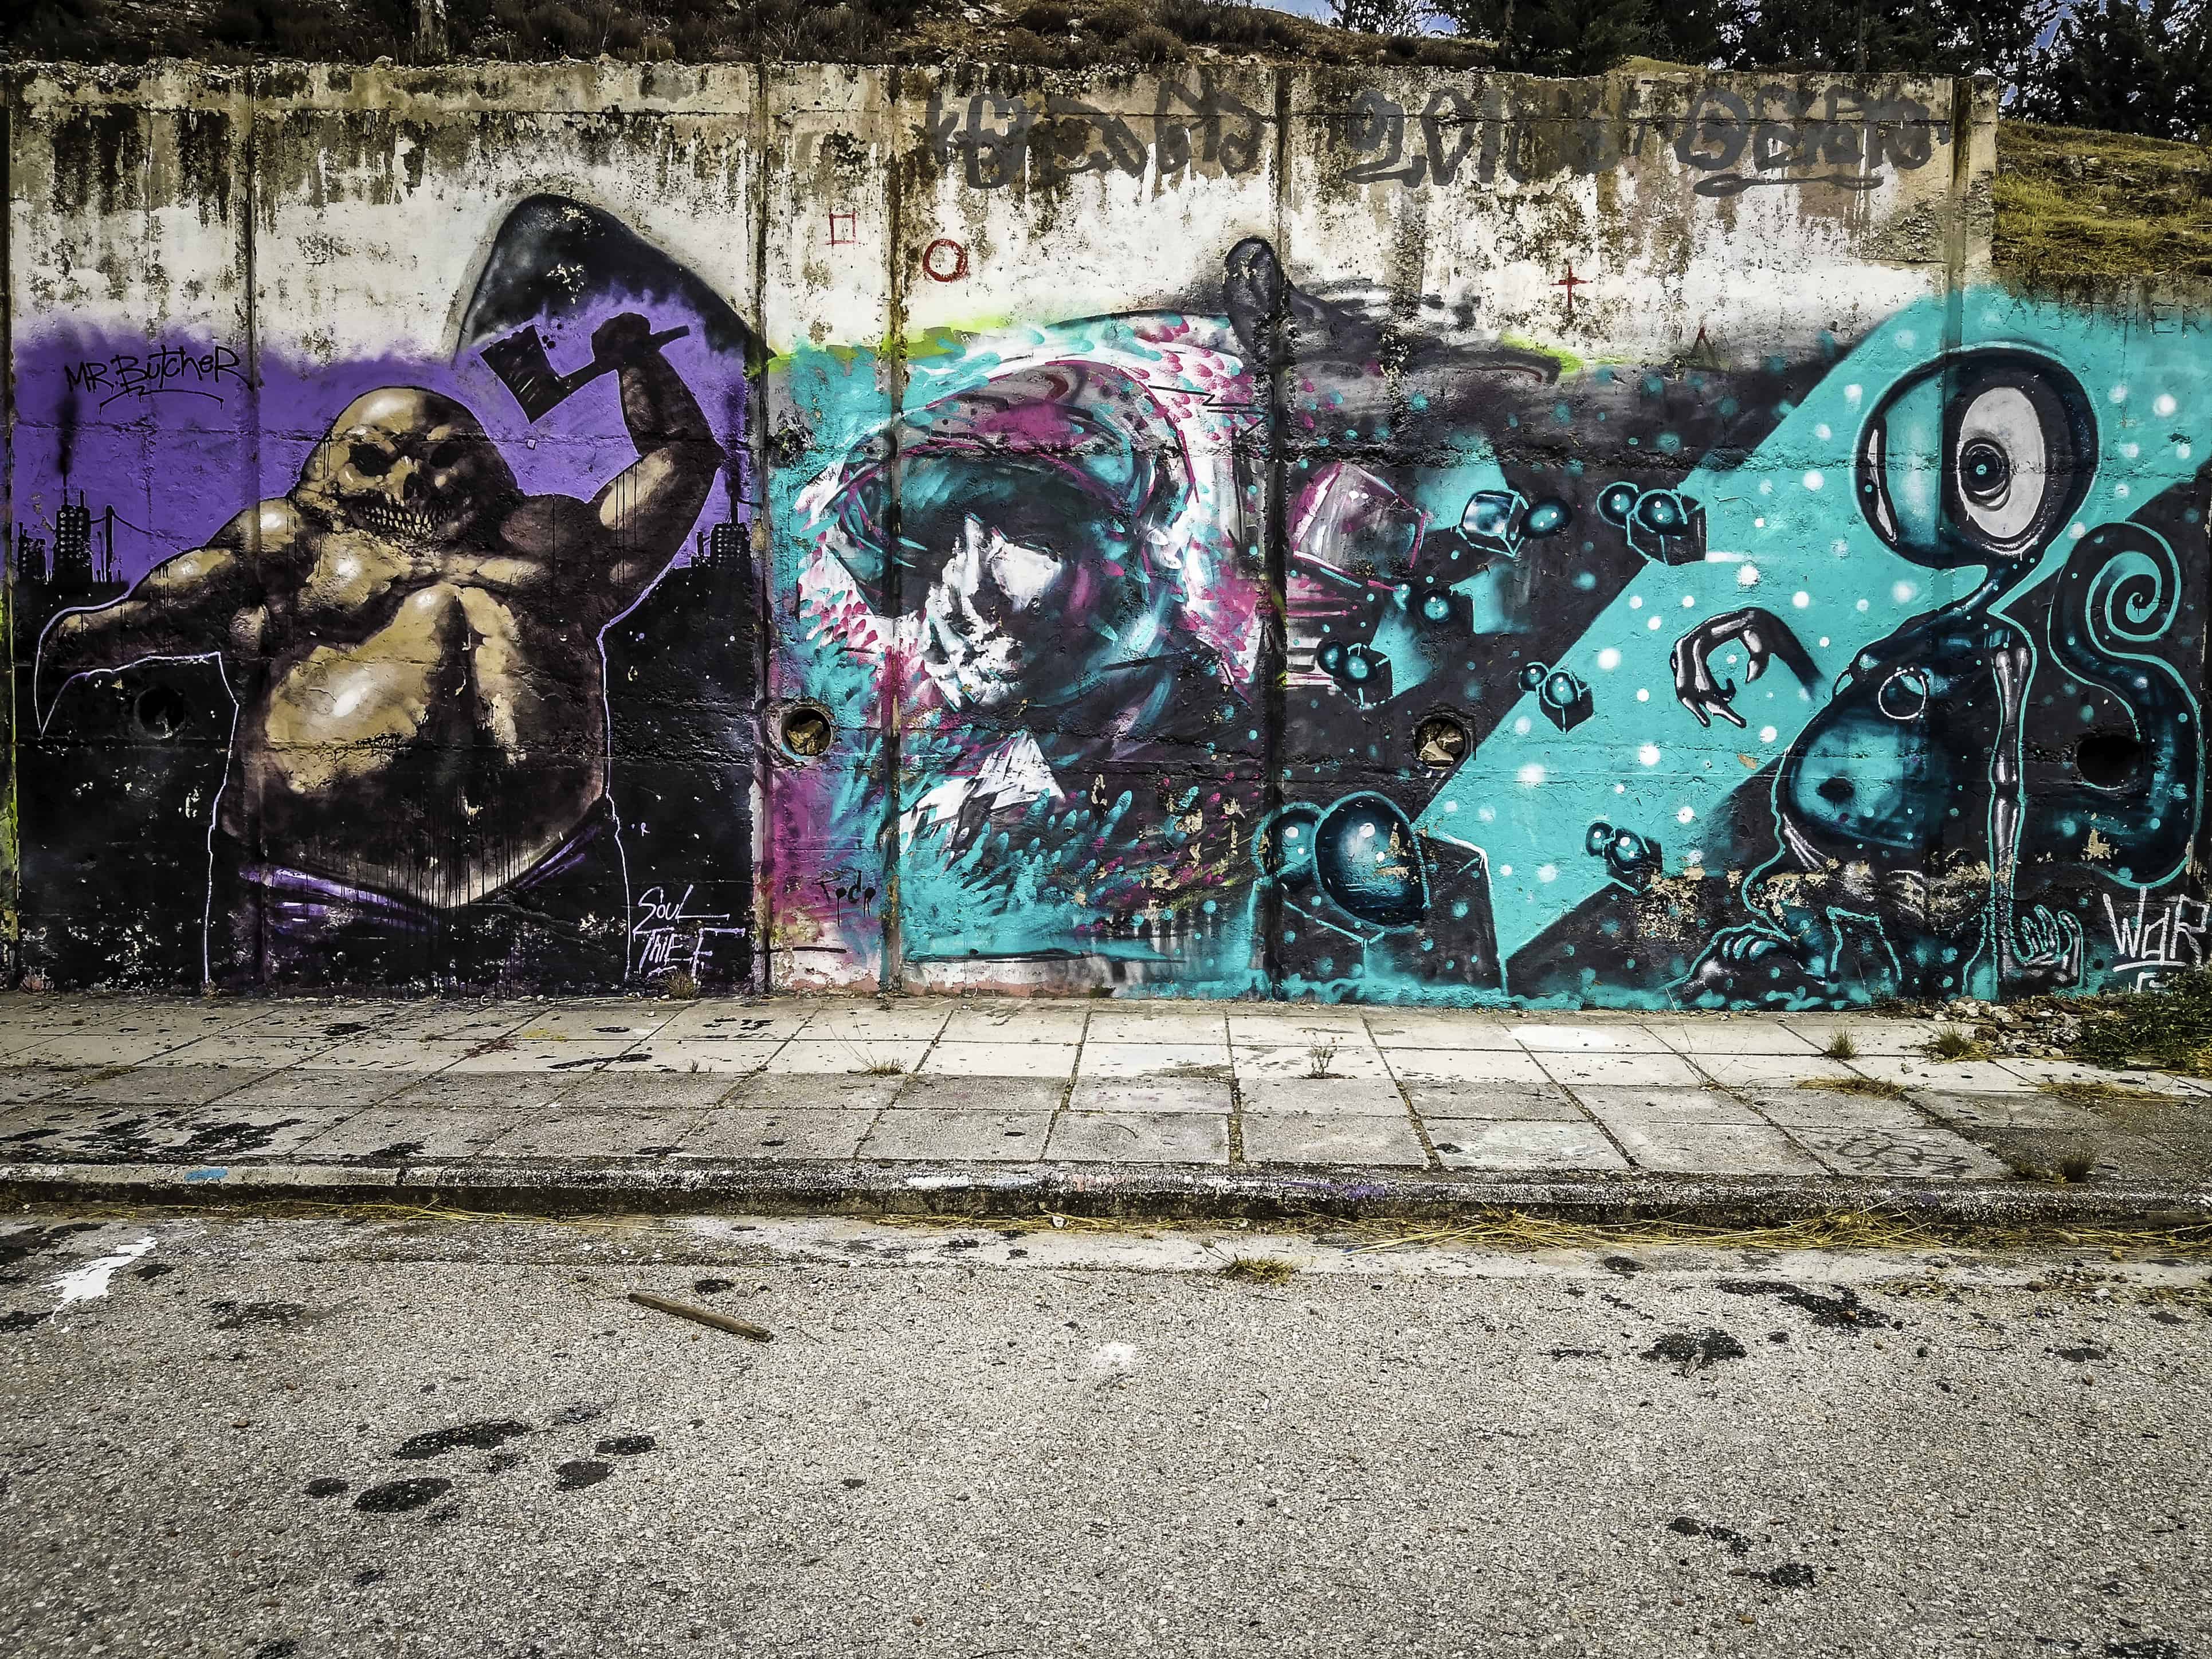 Τα γκράφιτι κάνουν την βόλτα πιο ενδιαφέρουσα